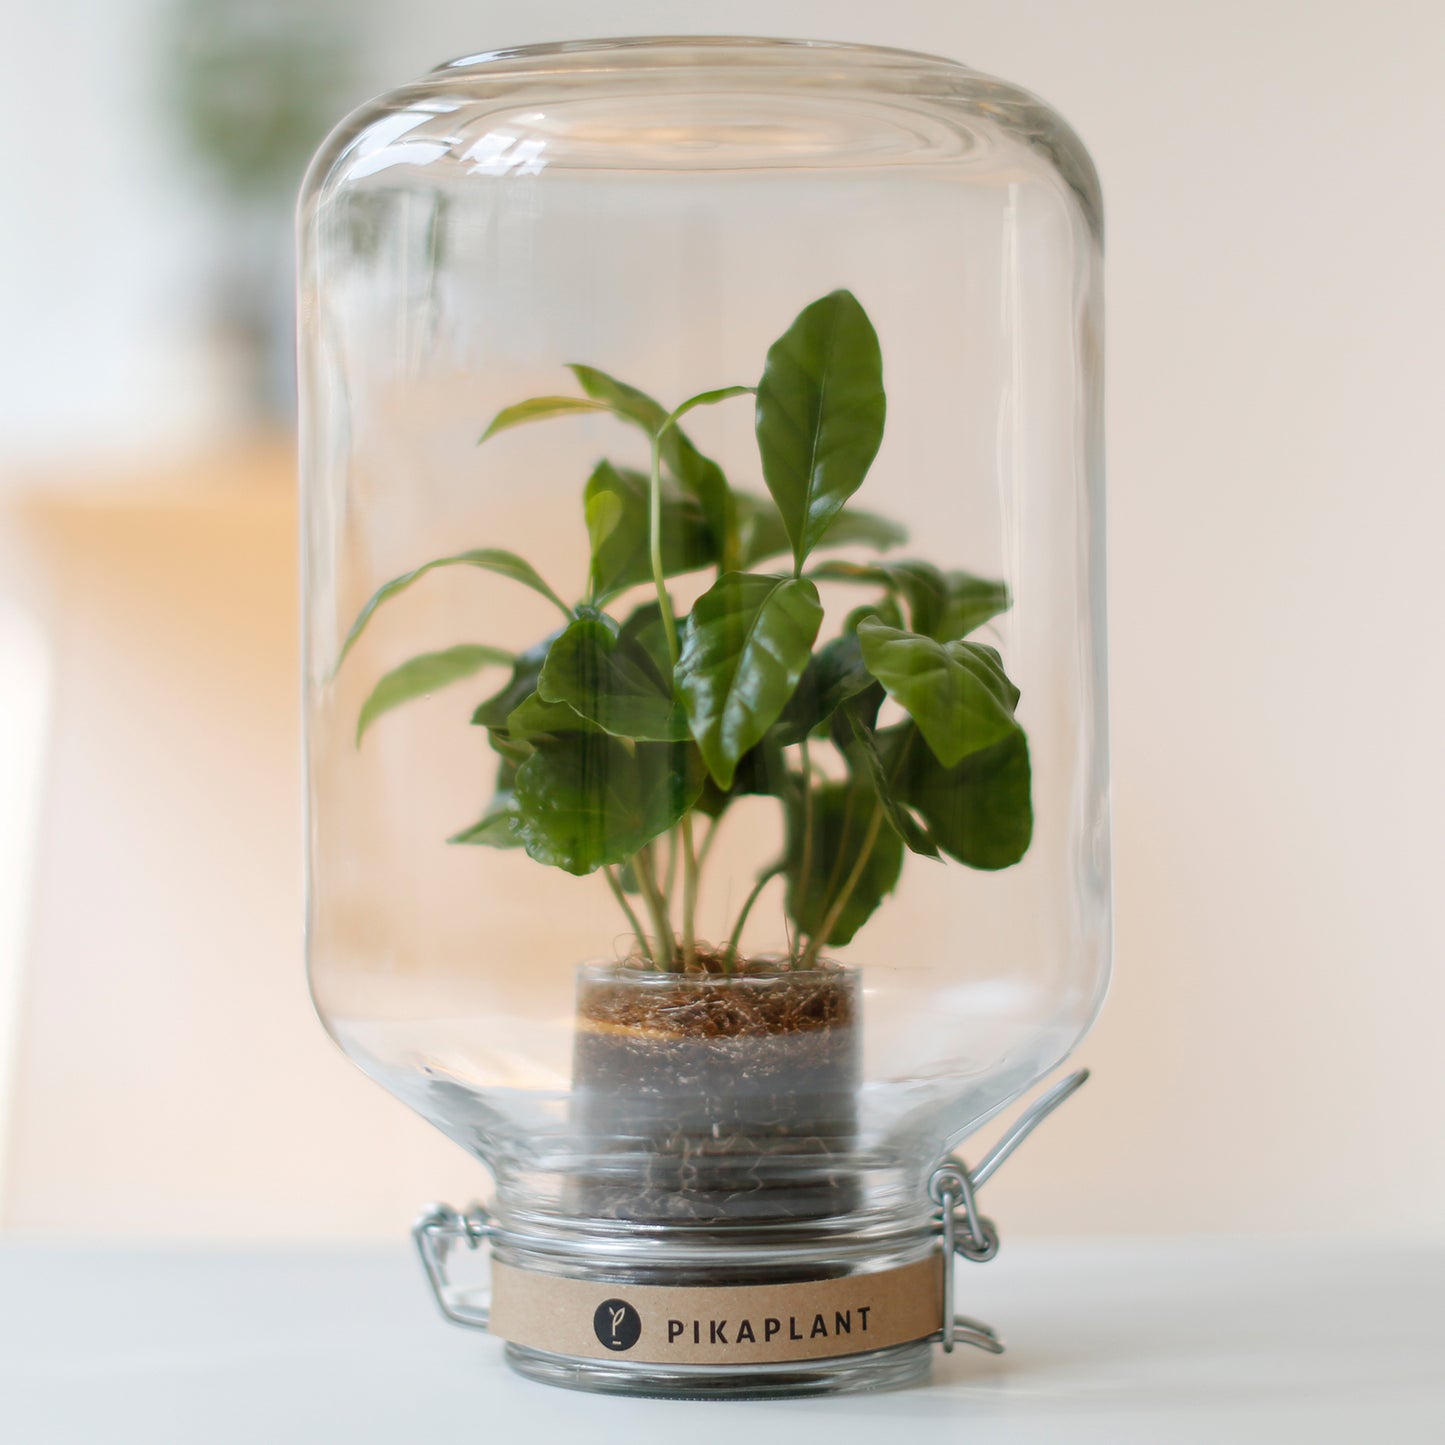 Pikaplant Jar Coffea Design Terrarium